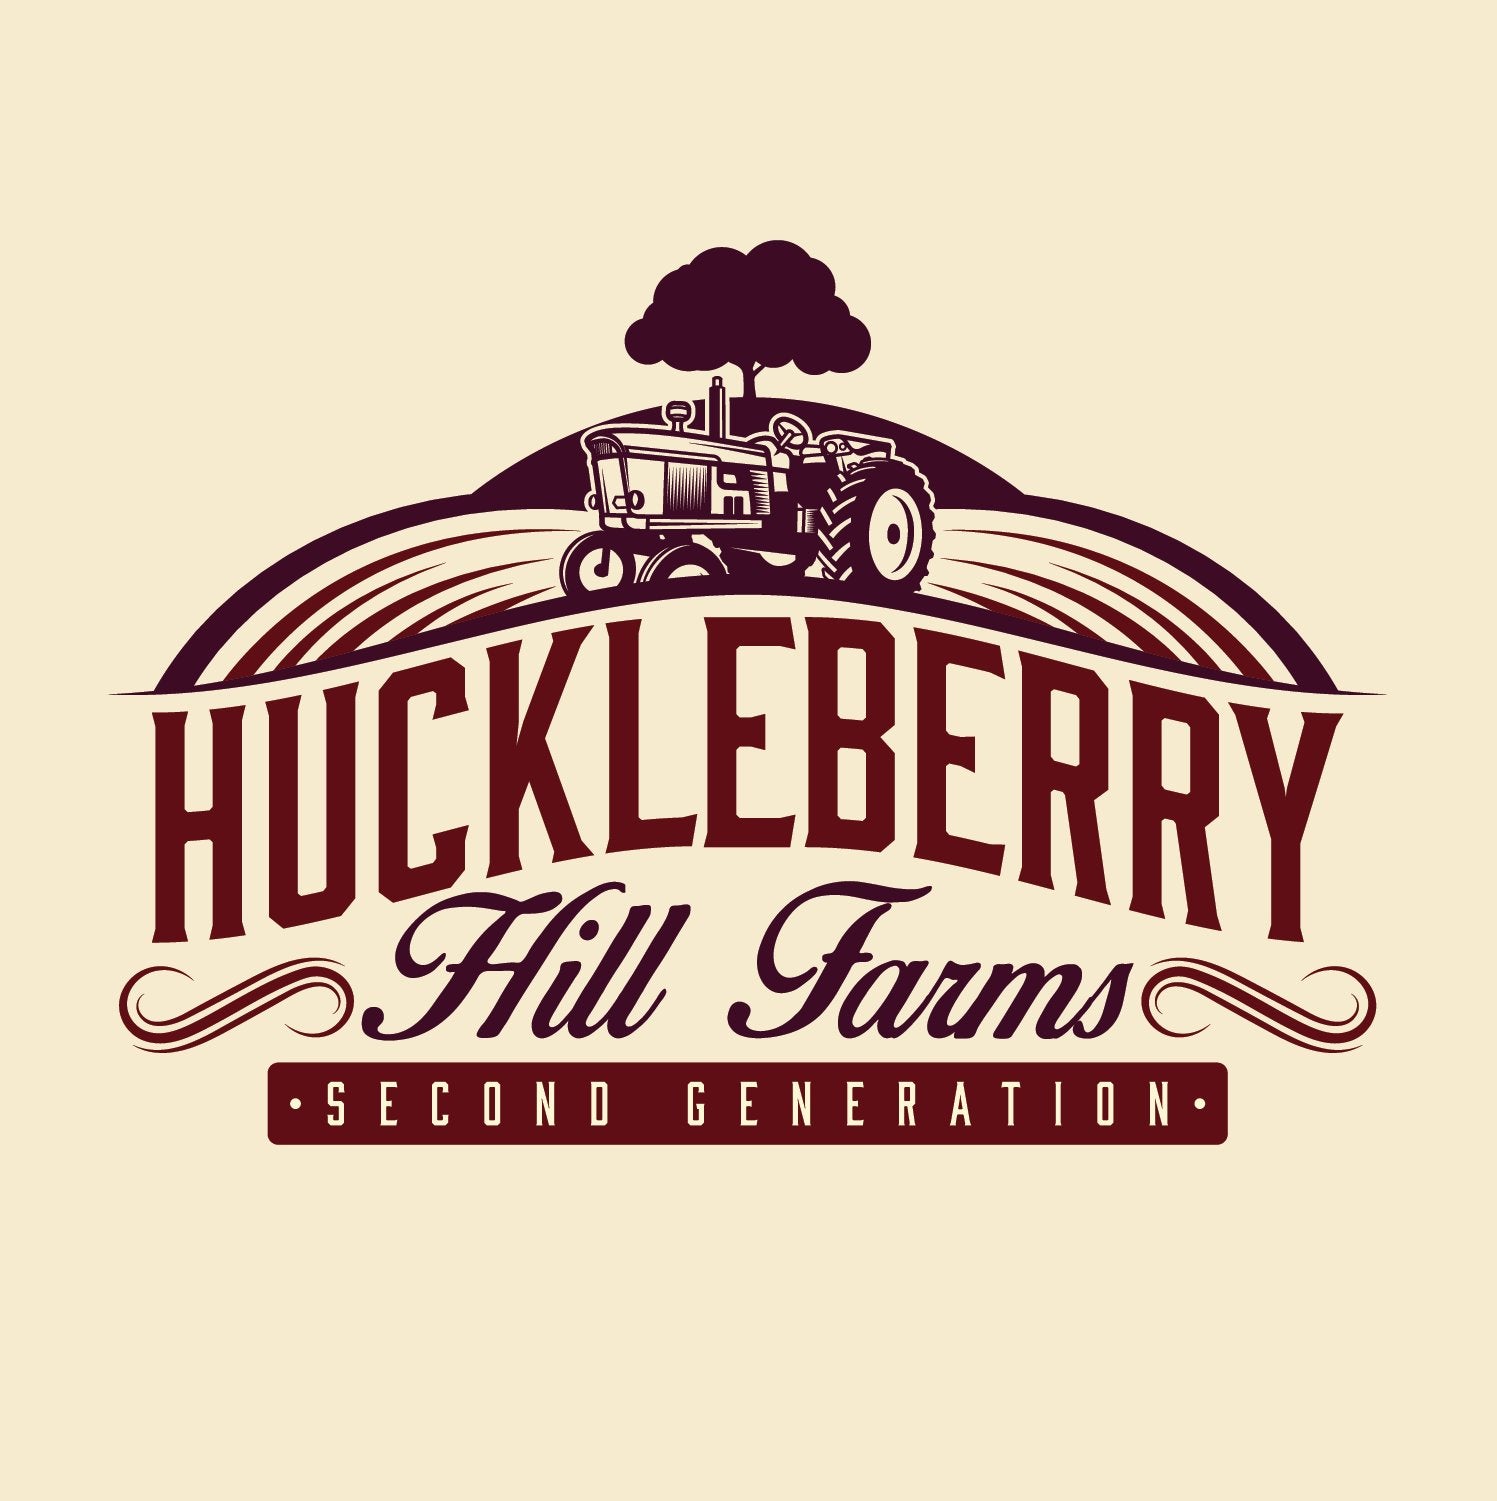 Huckleberry Hill Seeds